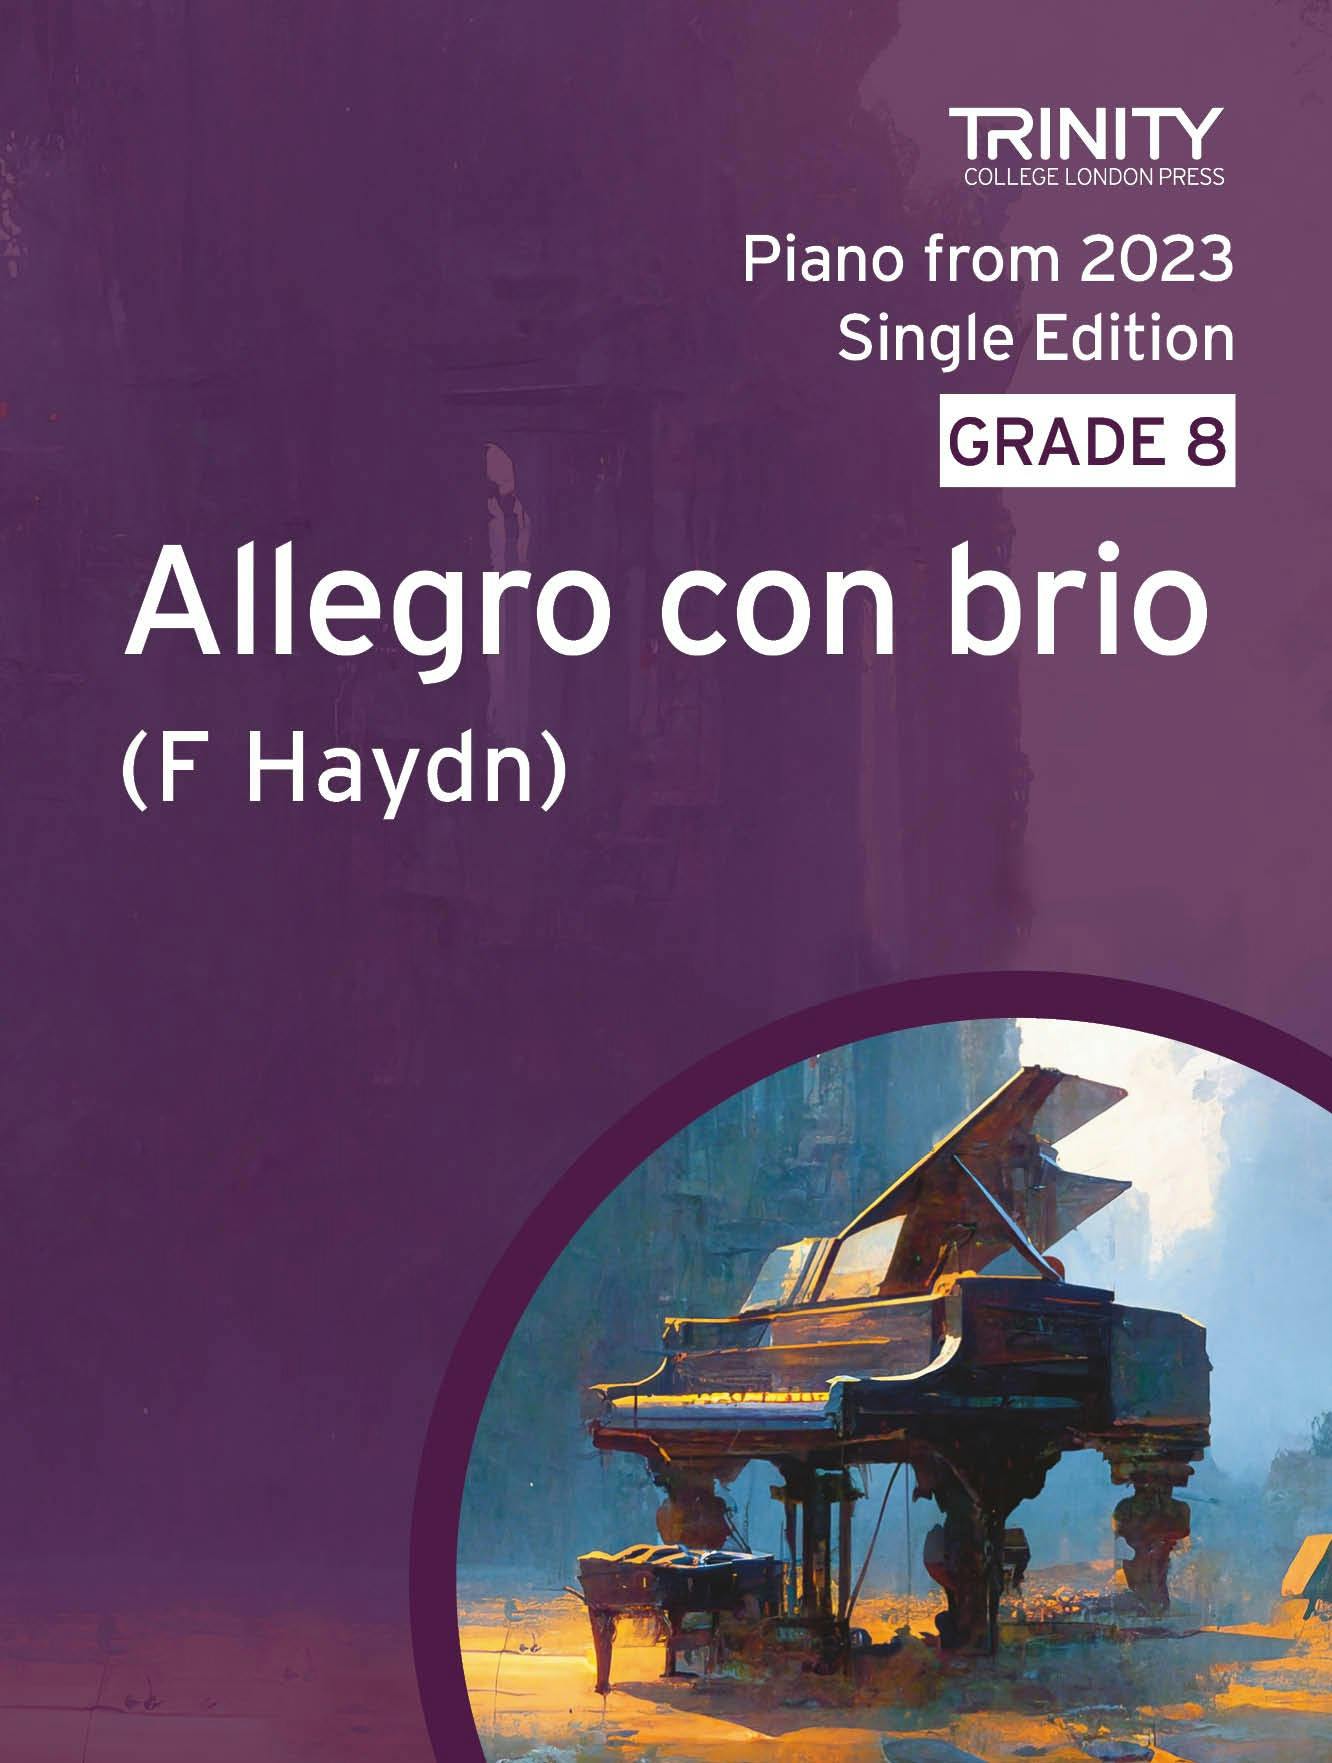 Allegro con brio (1st movt from Sonata in G, Hob XVI 27) - Haydn (Grade 8 Piano) - ebook